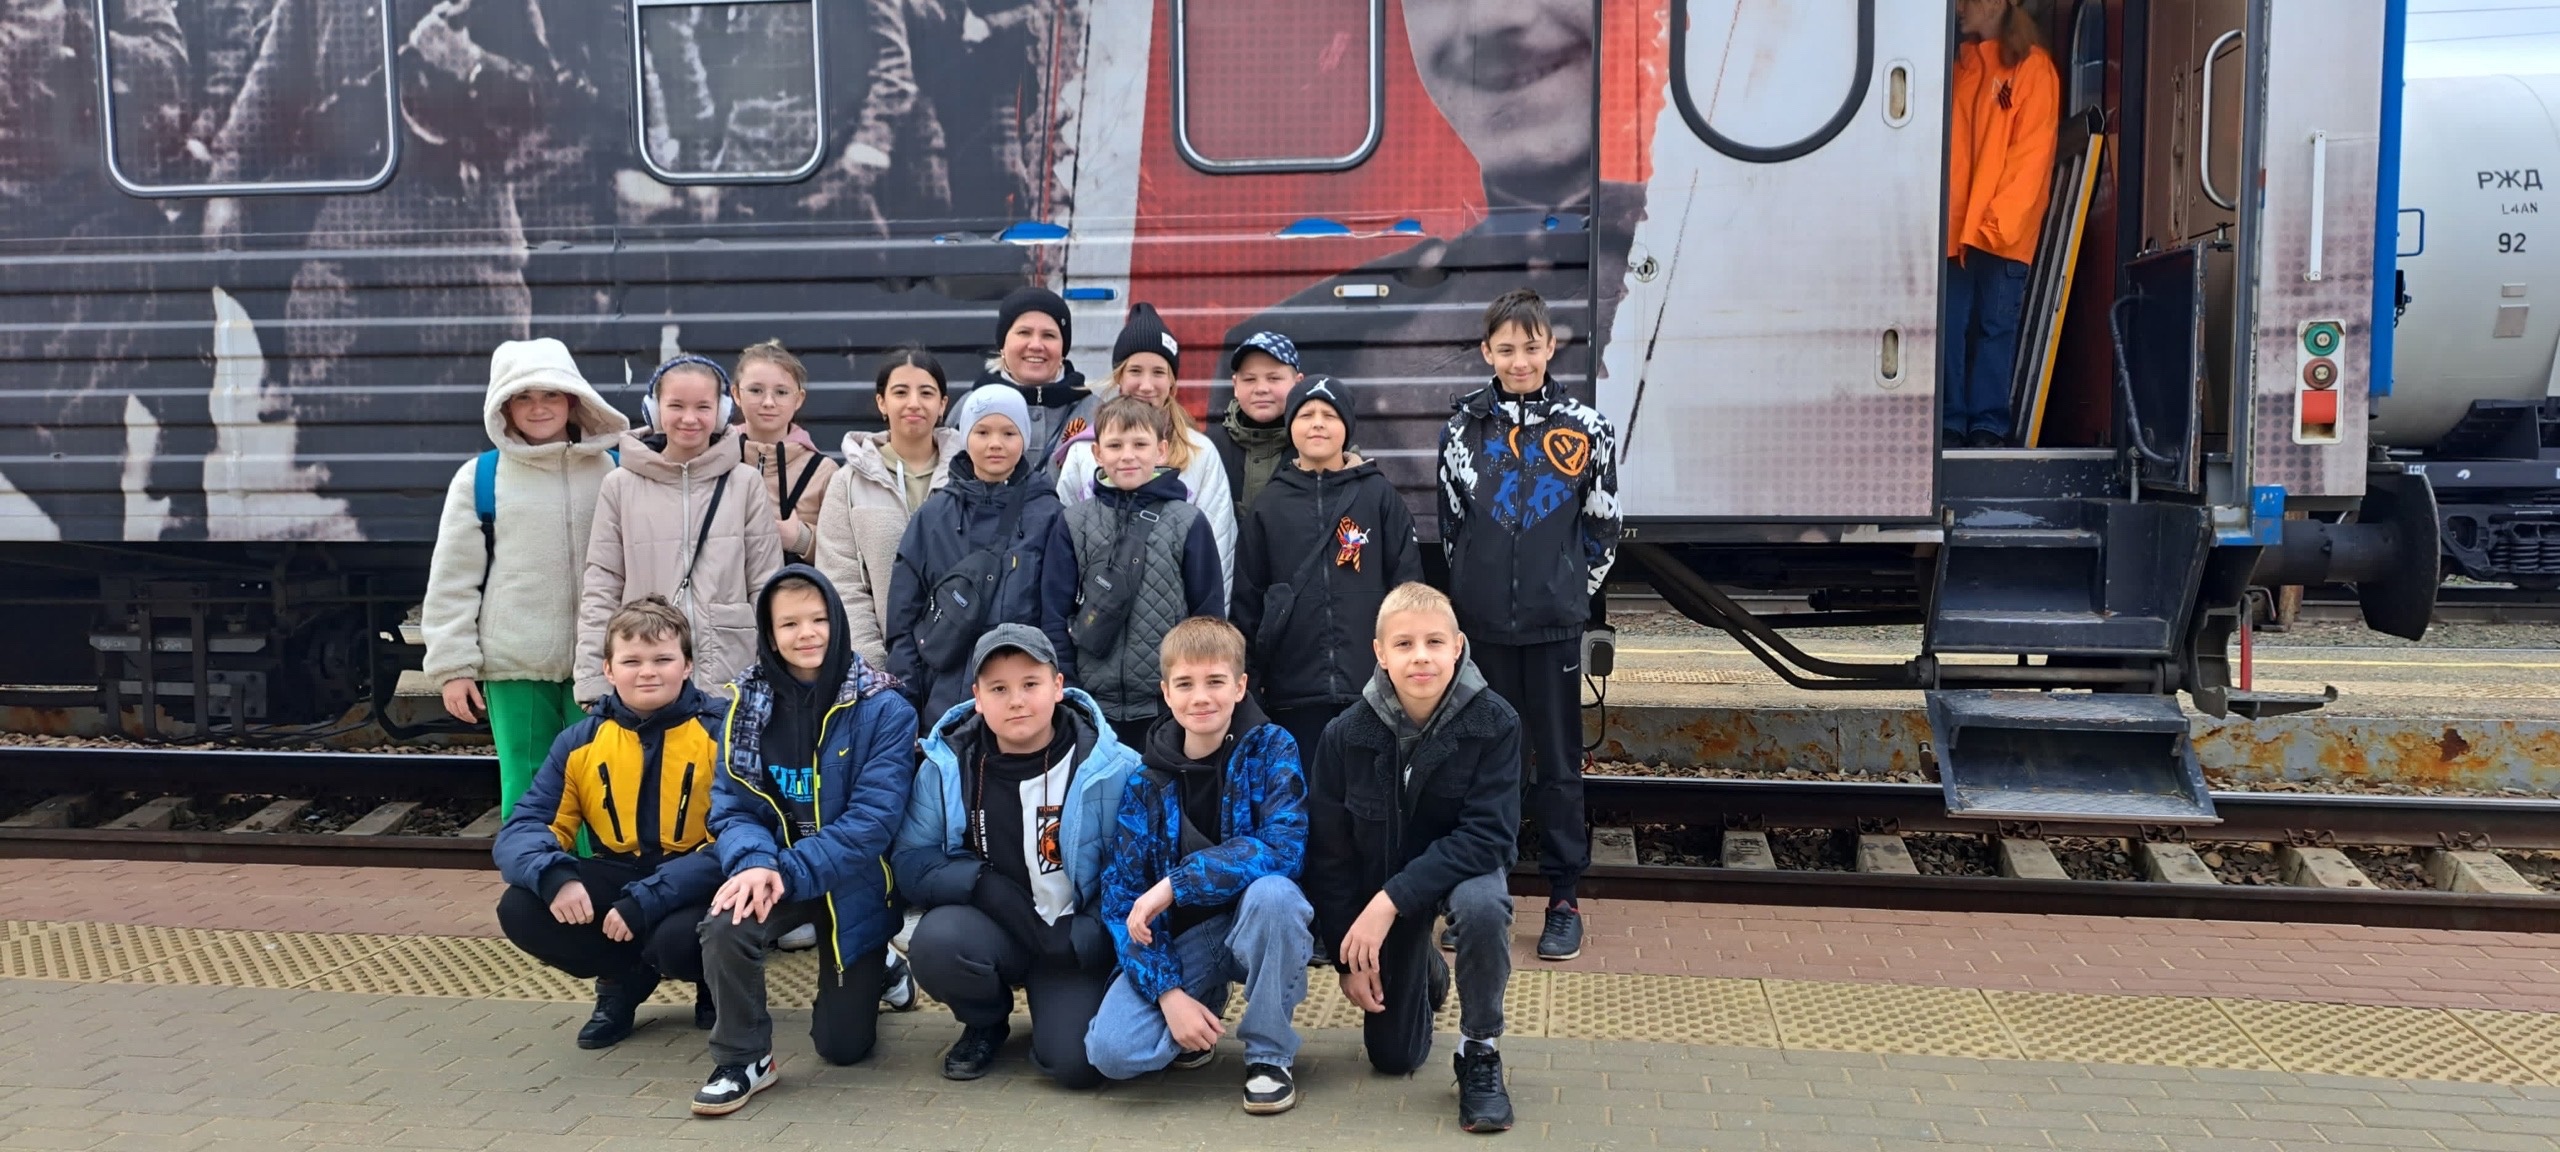 Пятиклассники нашей школы совершили незабываемую экскурсию по передвижному музею «Поезд Победы».